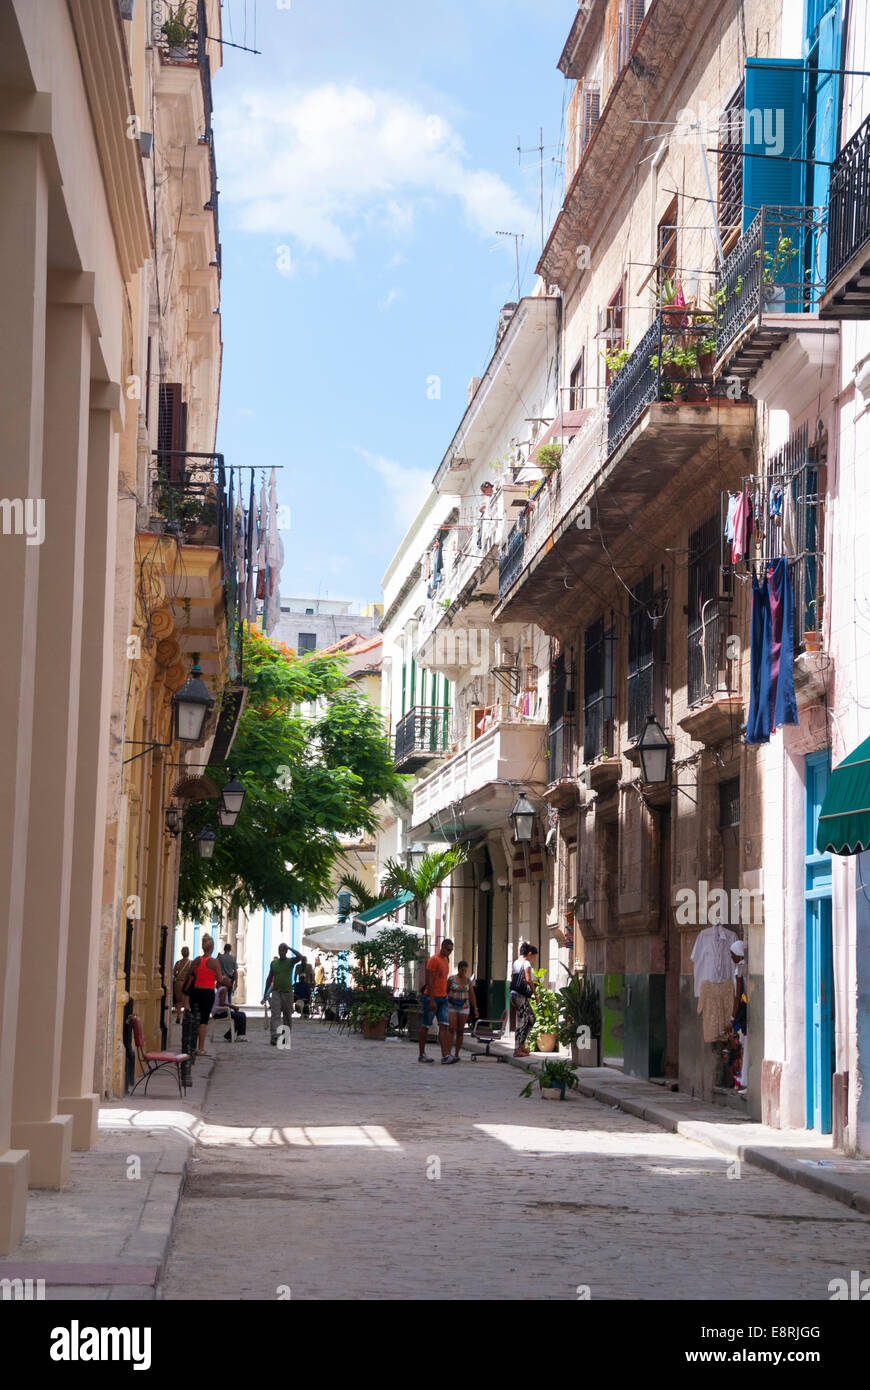 Spanische Kolonialarchitektur und engen Gassen in der Altstadt von Havanna Kuba. Stockfoto